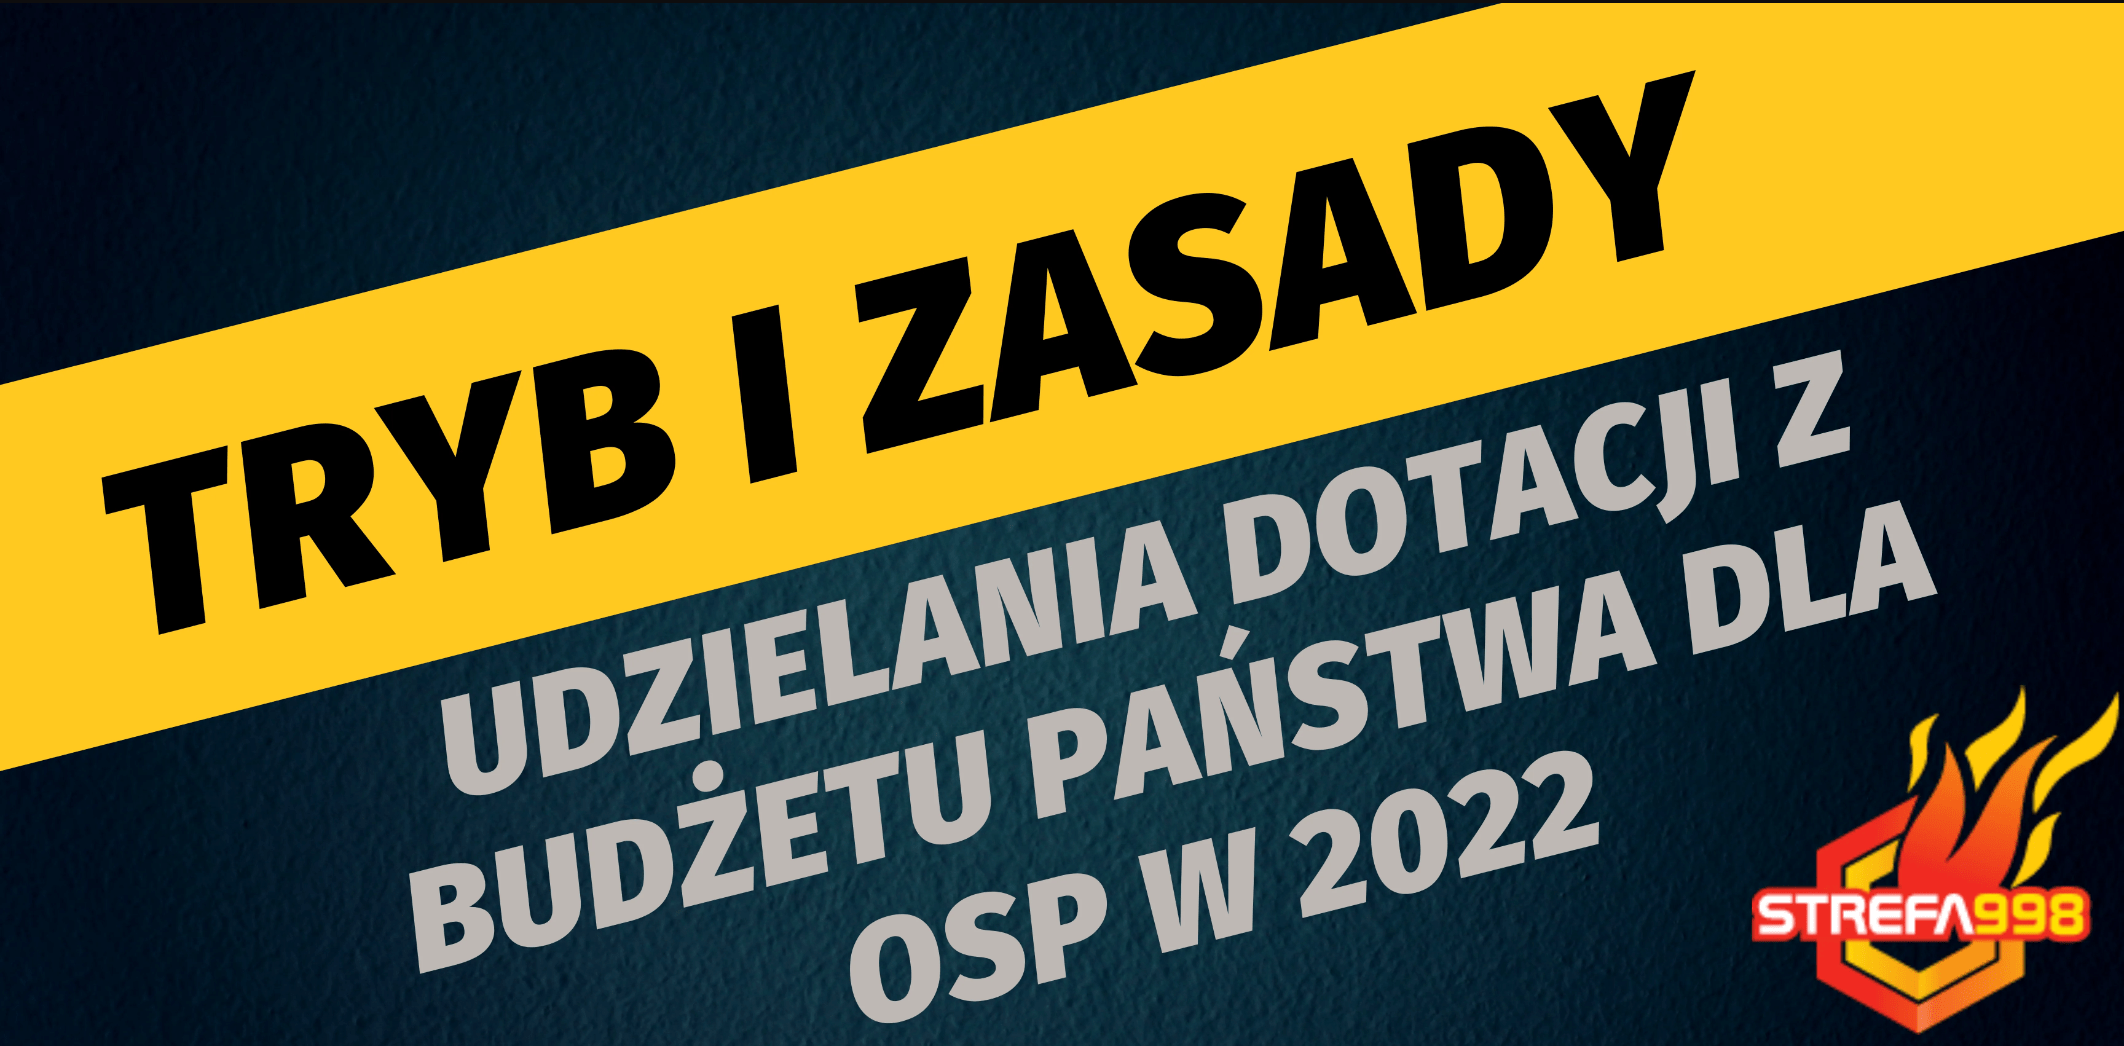 Zasady udzielania dotacji dla jednostek OSP w 2022r